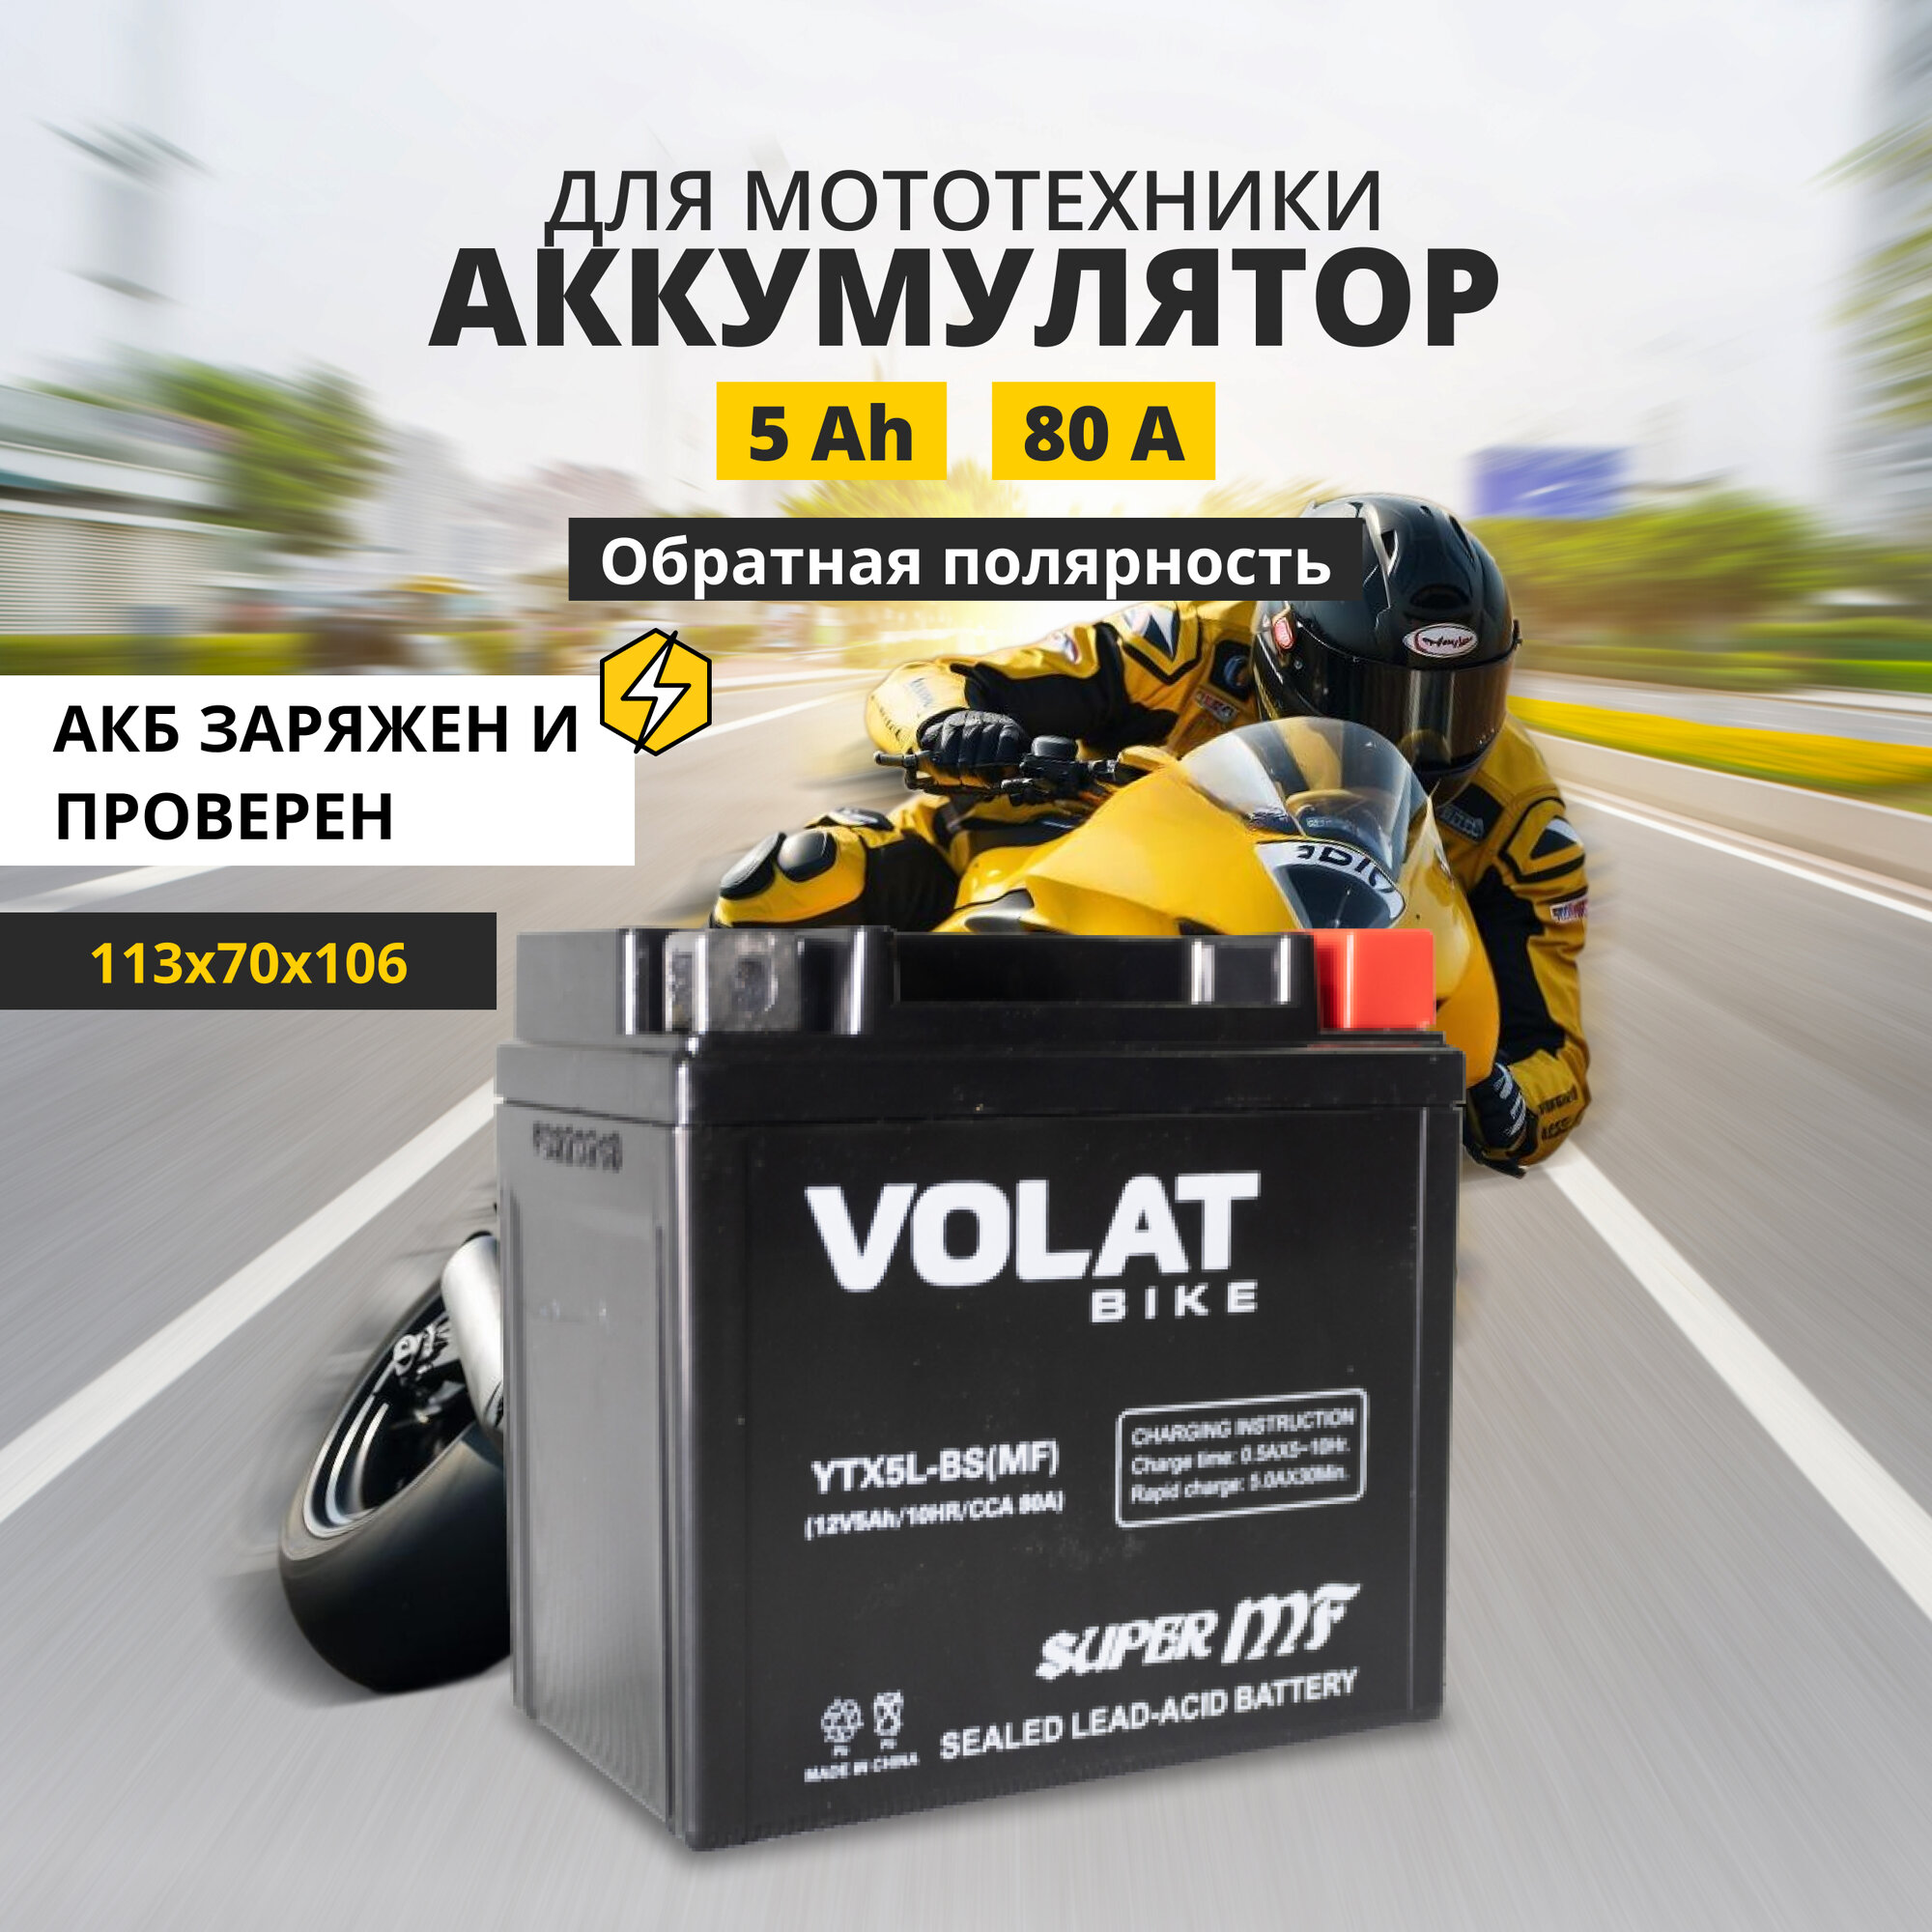 Аккумулятор для мотоцикла 12в 5 Ah 80 A обратная полярность VOLAT YTX5L-BS(MF) акб 12v AGM для мопеда скутера квадроцикла 113x70x106